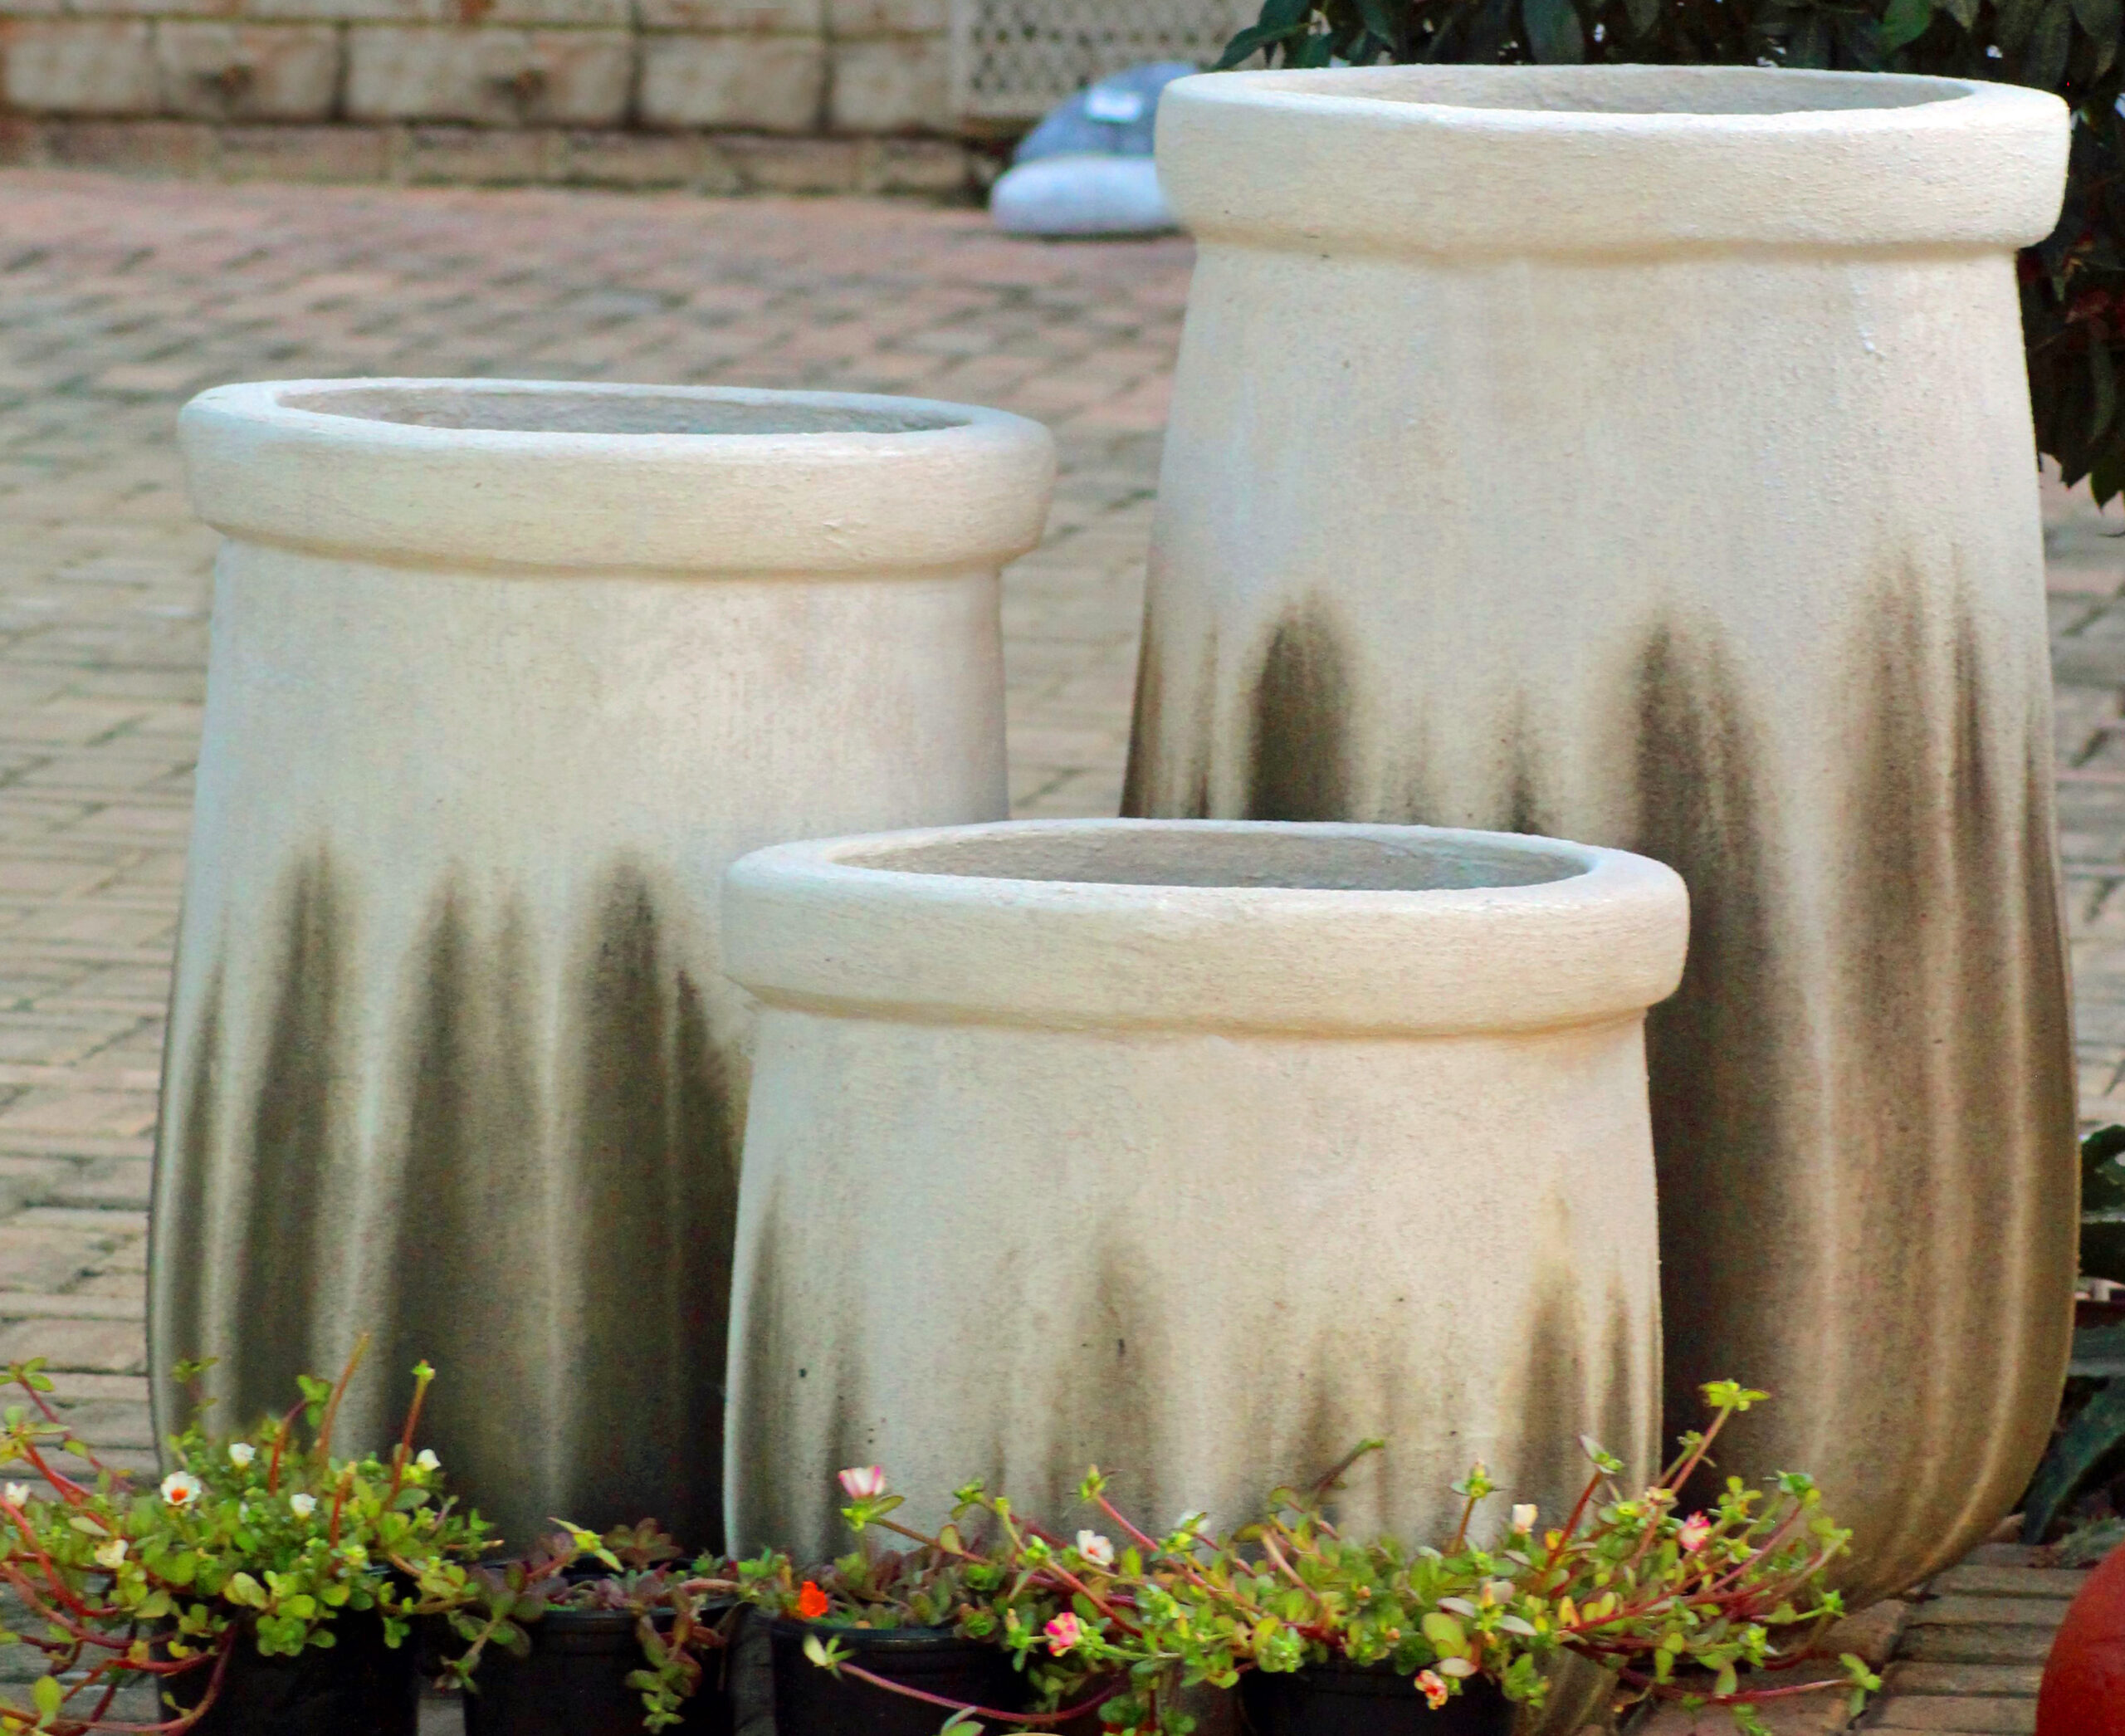 Karoo Garden Pots